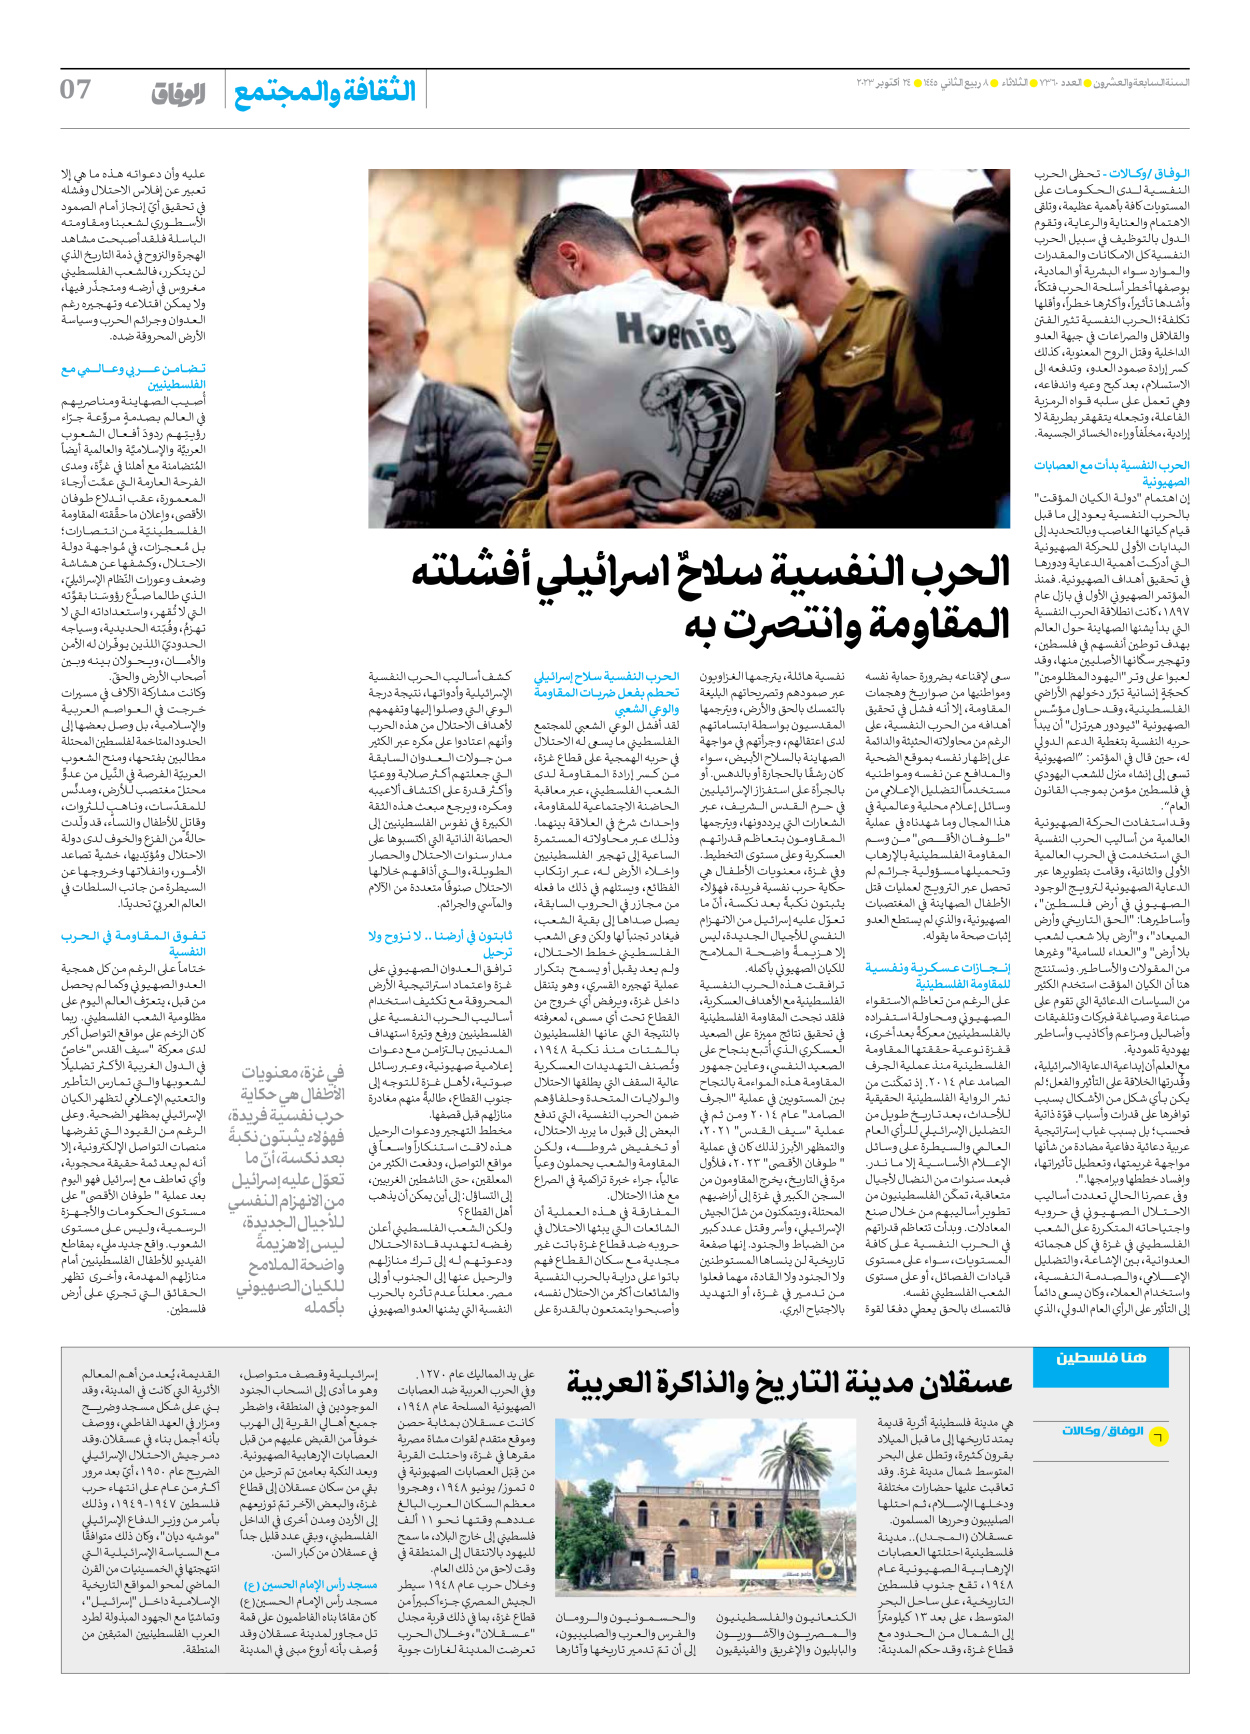 صحیفة ایران الدولیة الوفاق - العدد سبعة آلاف وثلاثمائة وستون - ٢٤ أكتوبر ٢٠٢٣ - الصفحة ۷